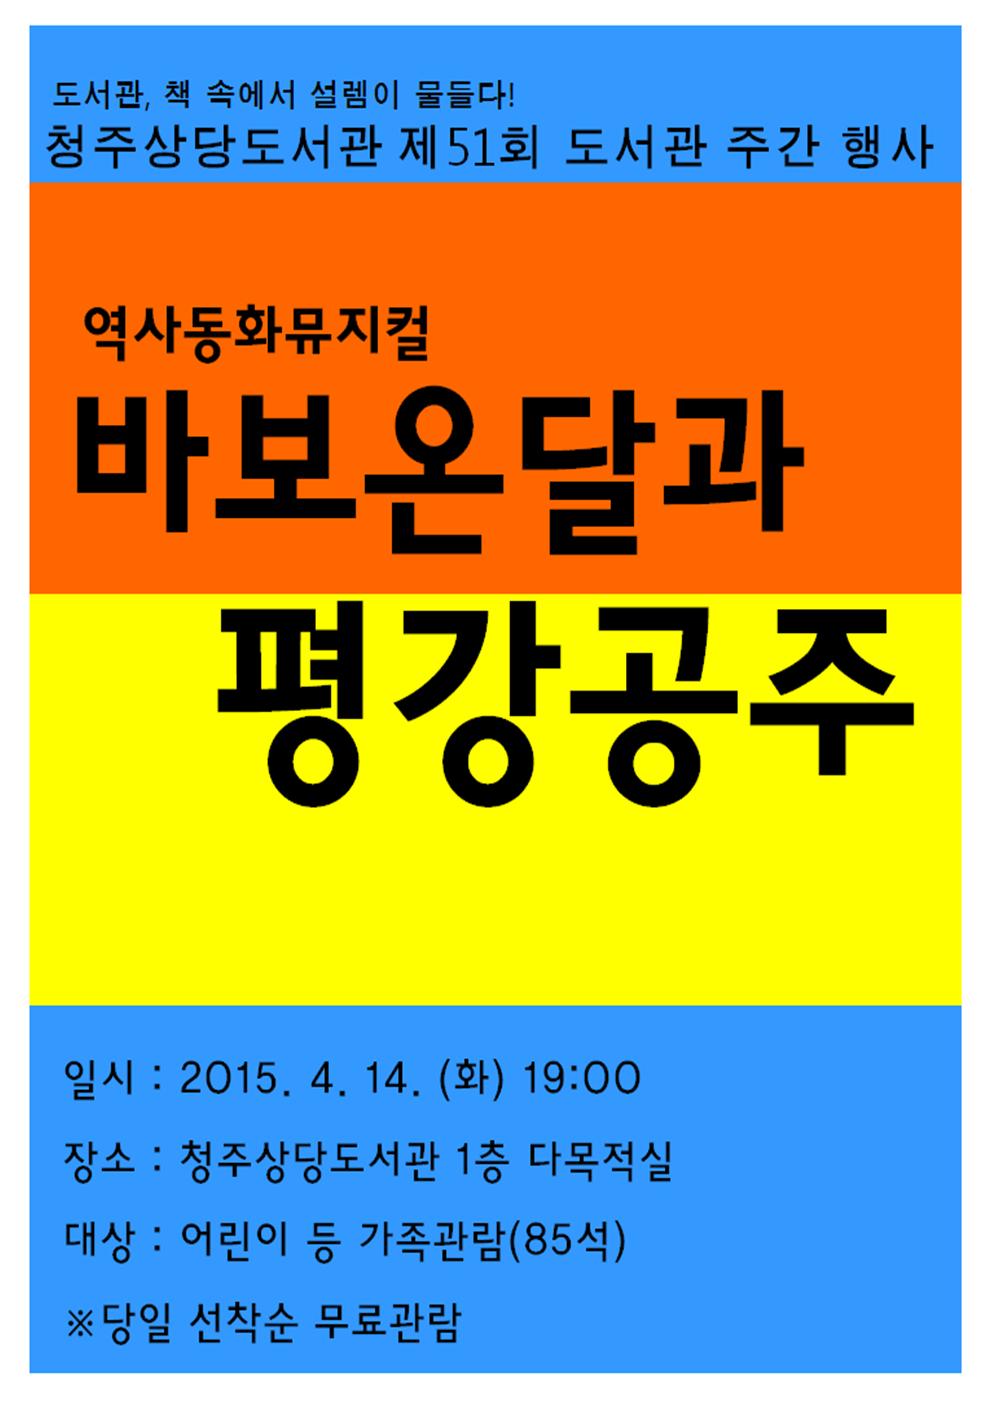 수준있는 뮤지컬공연!! 4월 14일 오후7시